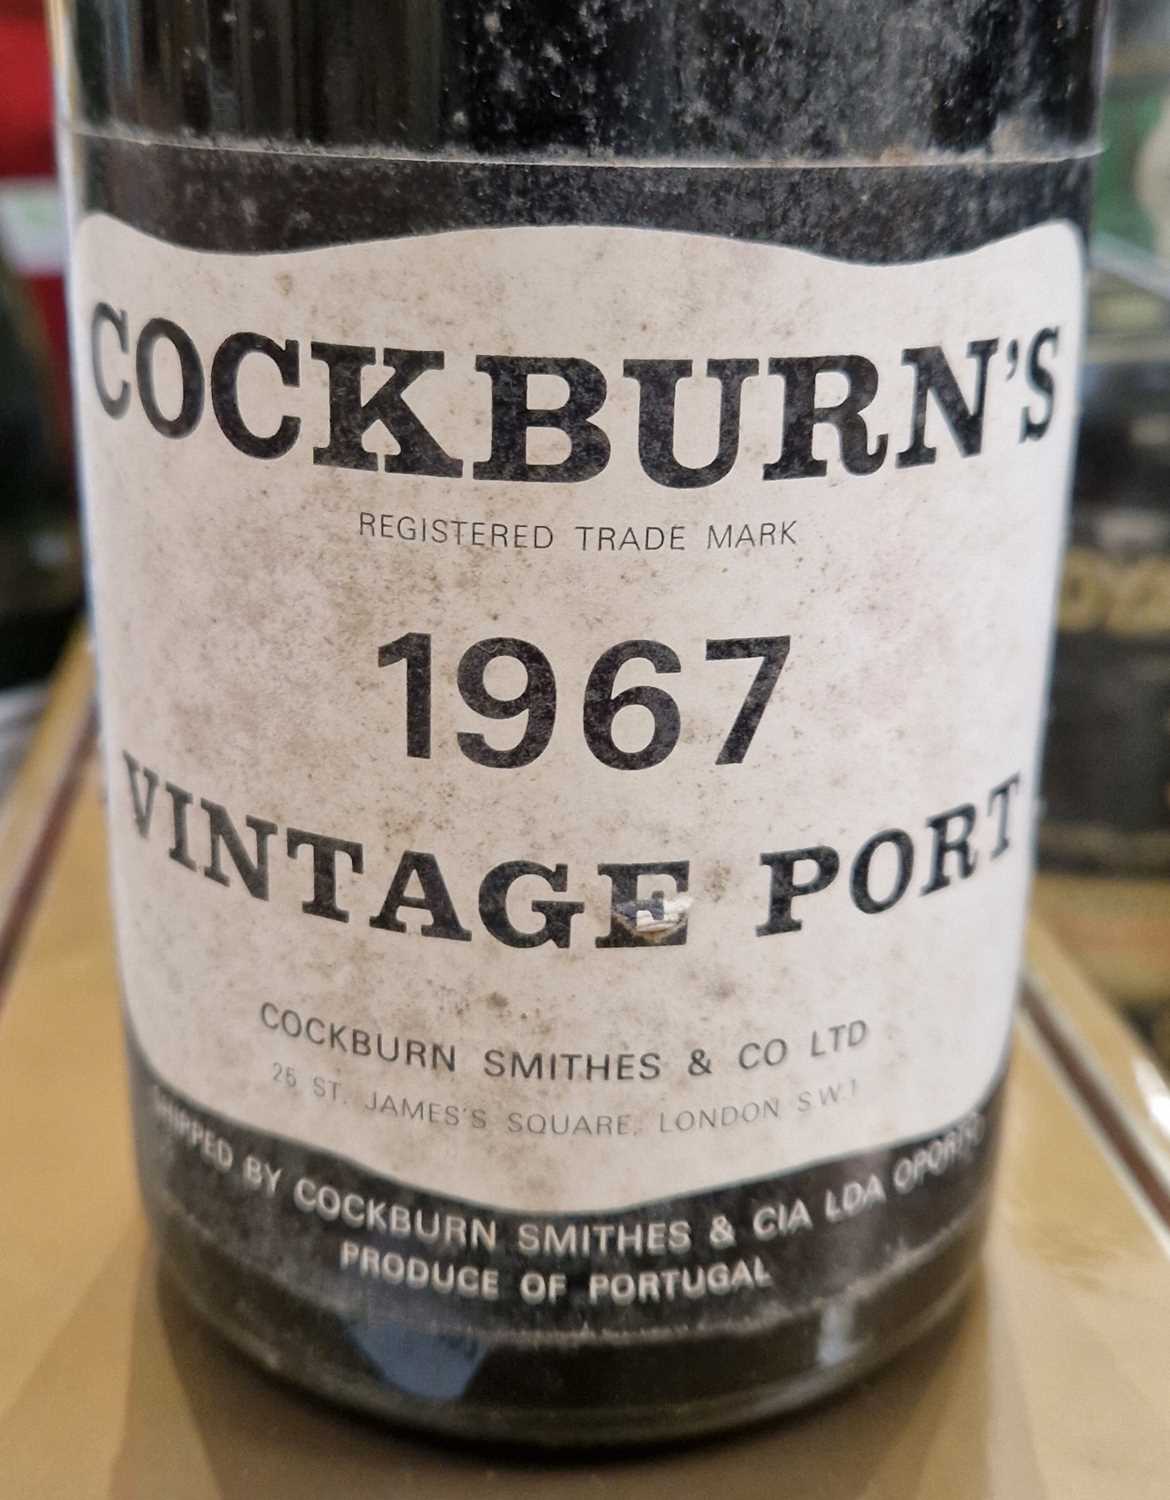 One bottle of Cockburn's 1967 vintage port, Cockburn Smithes & co Ltd London. - Image 2 of 2